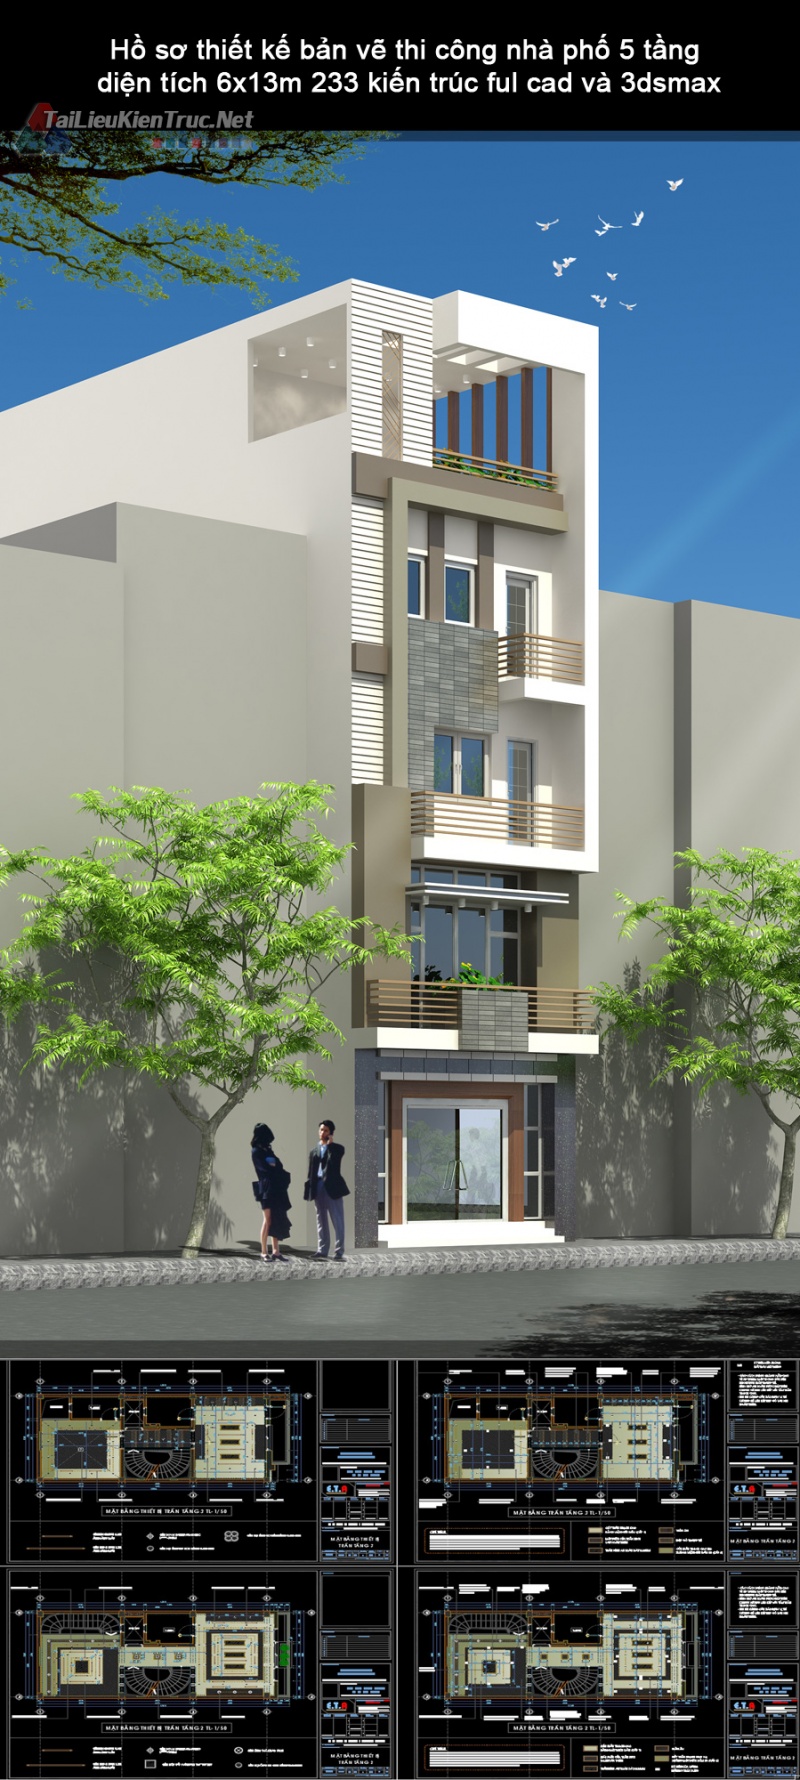 Hồ sơ thiết kế bản vẽ thi công nhà phố 5 tầng diện tích 6x13m 233 kiến trúc ful cad và 3dsmax